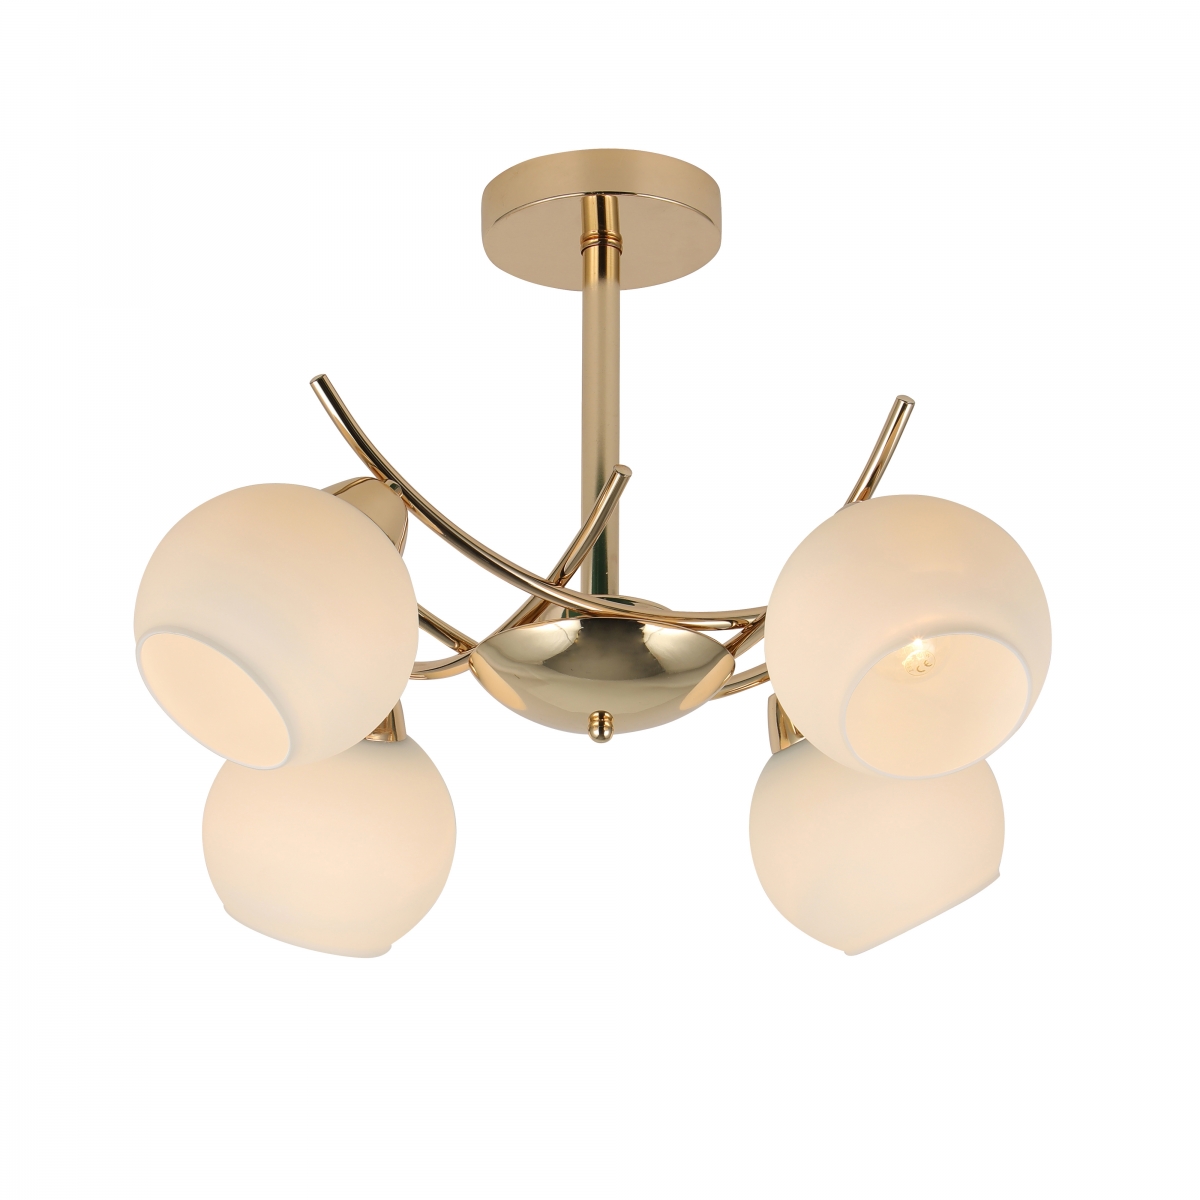 Lampa sufitowa Argos, minimalistyczny design, złota, 4 źródła światła